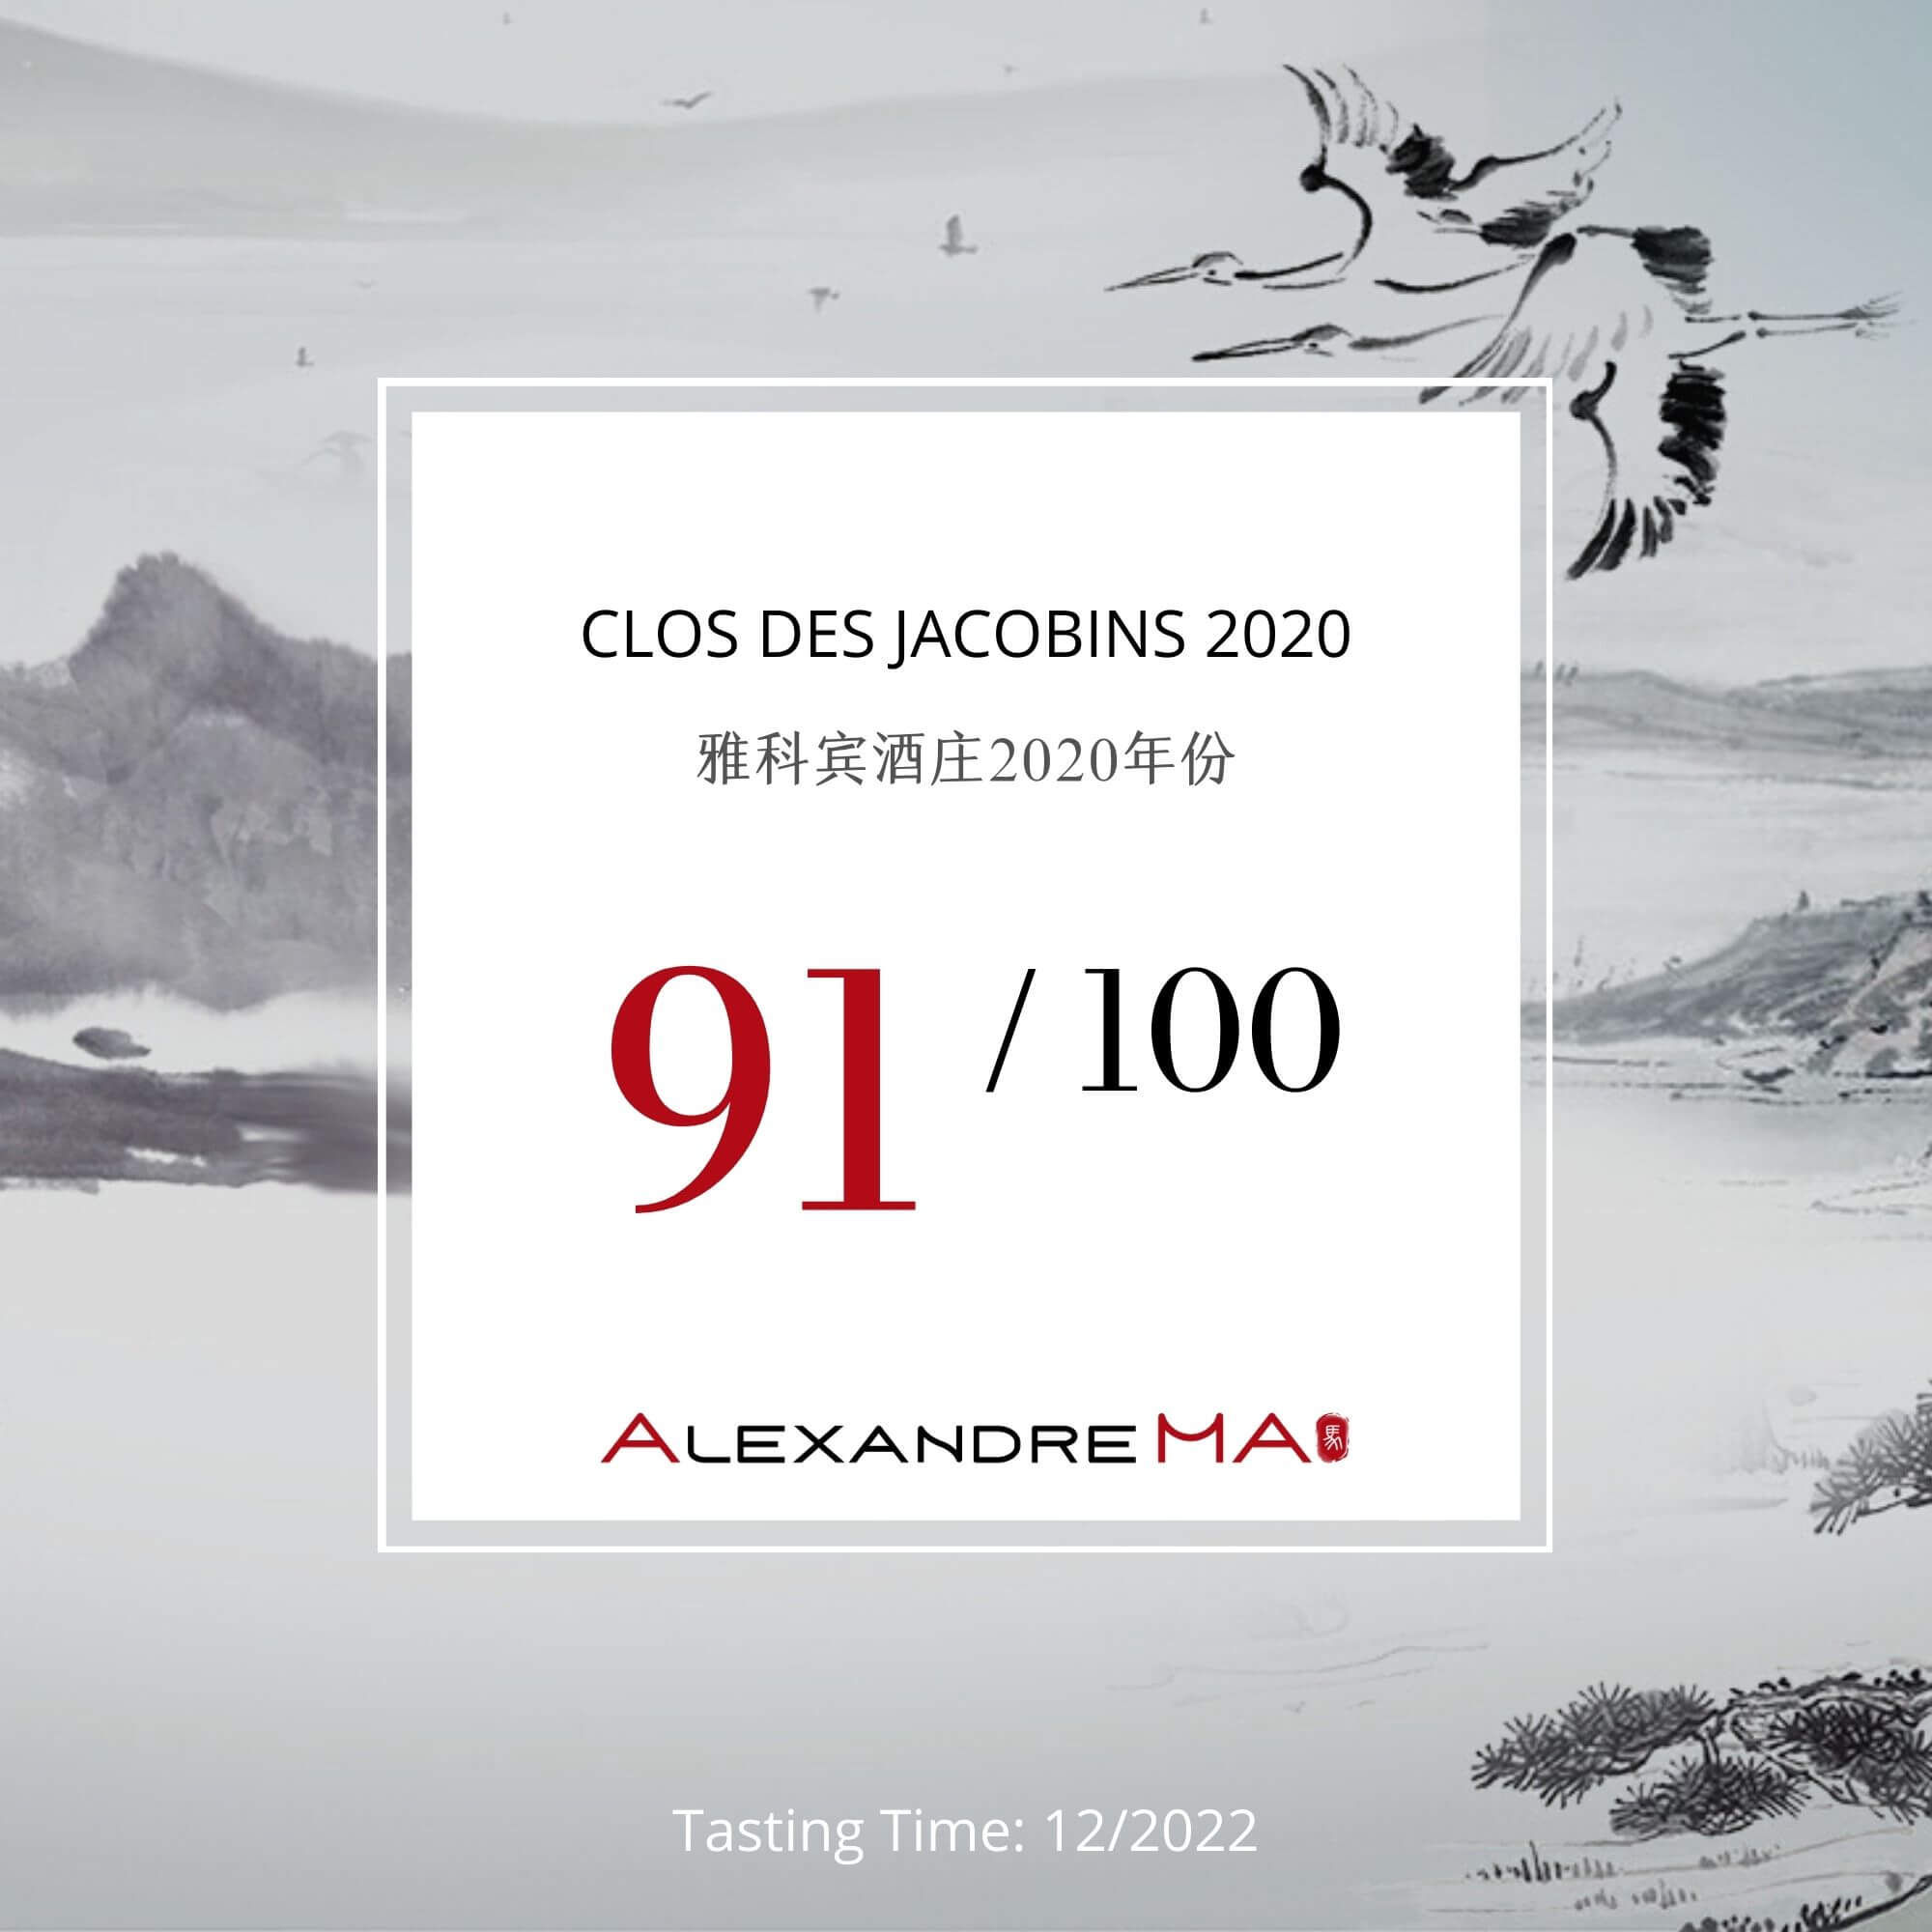 Clos des Jacobins 2020 - Alexandre MA